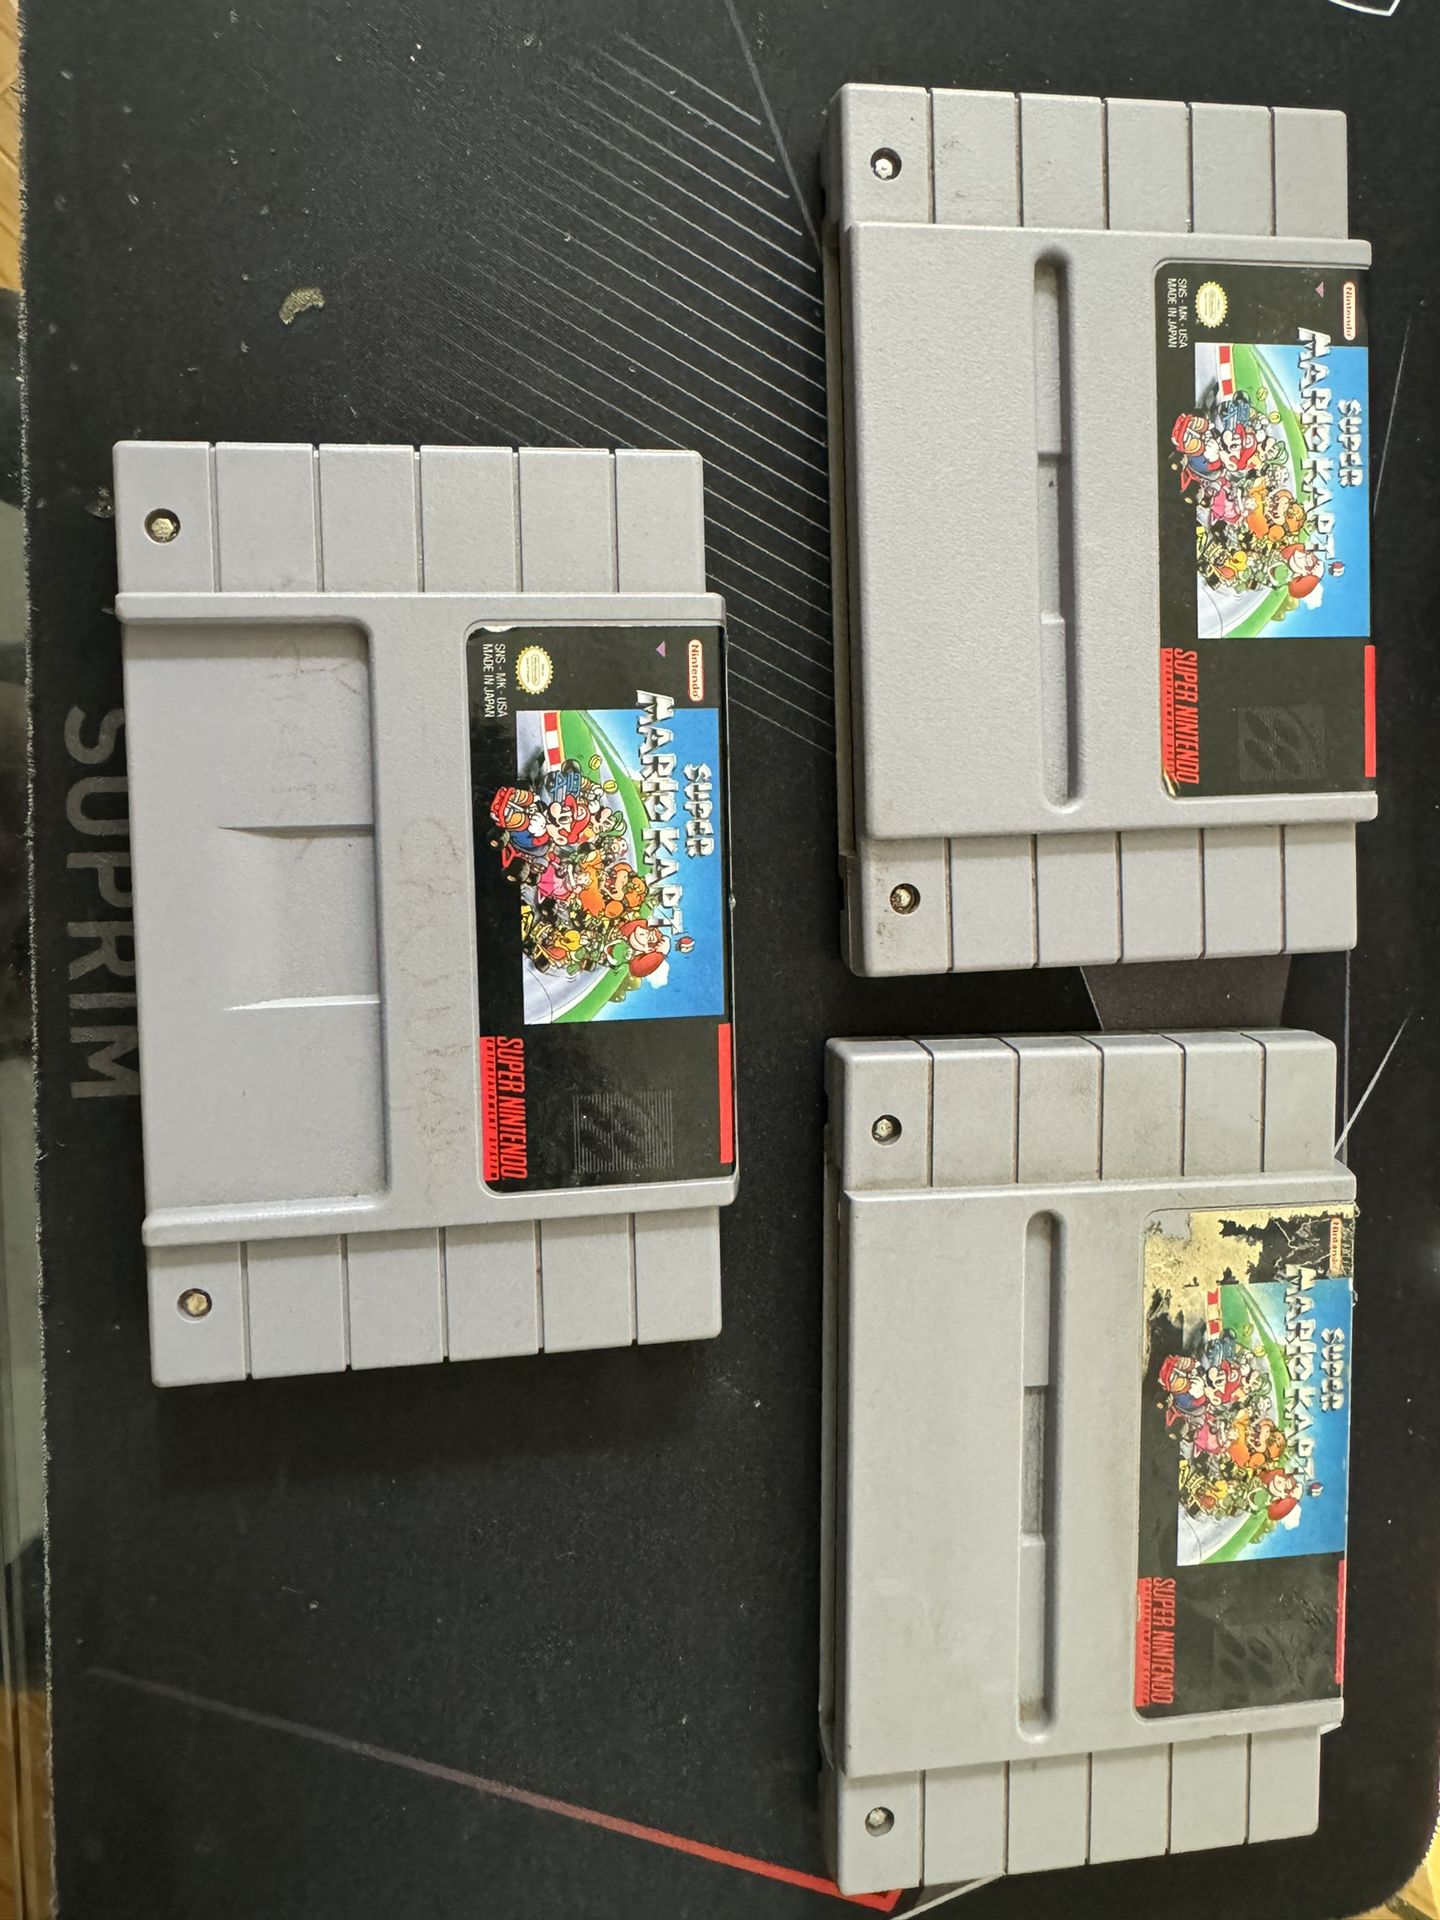 Super Mario Kart SNES super Nintendo 